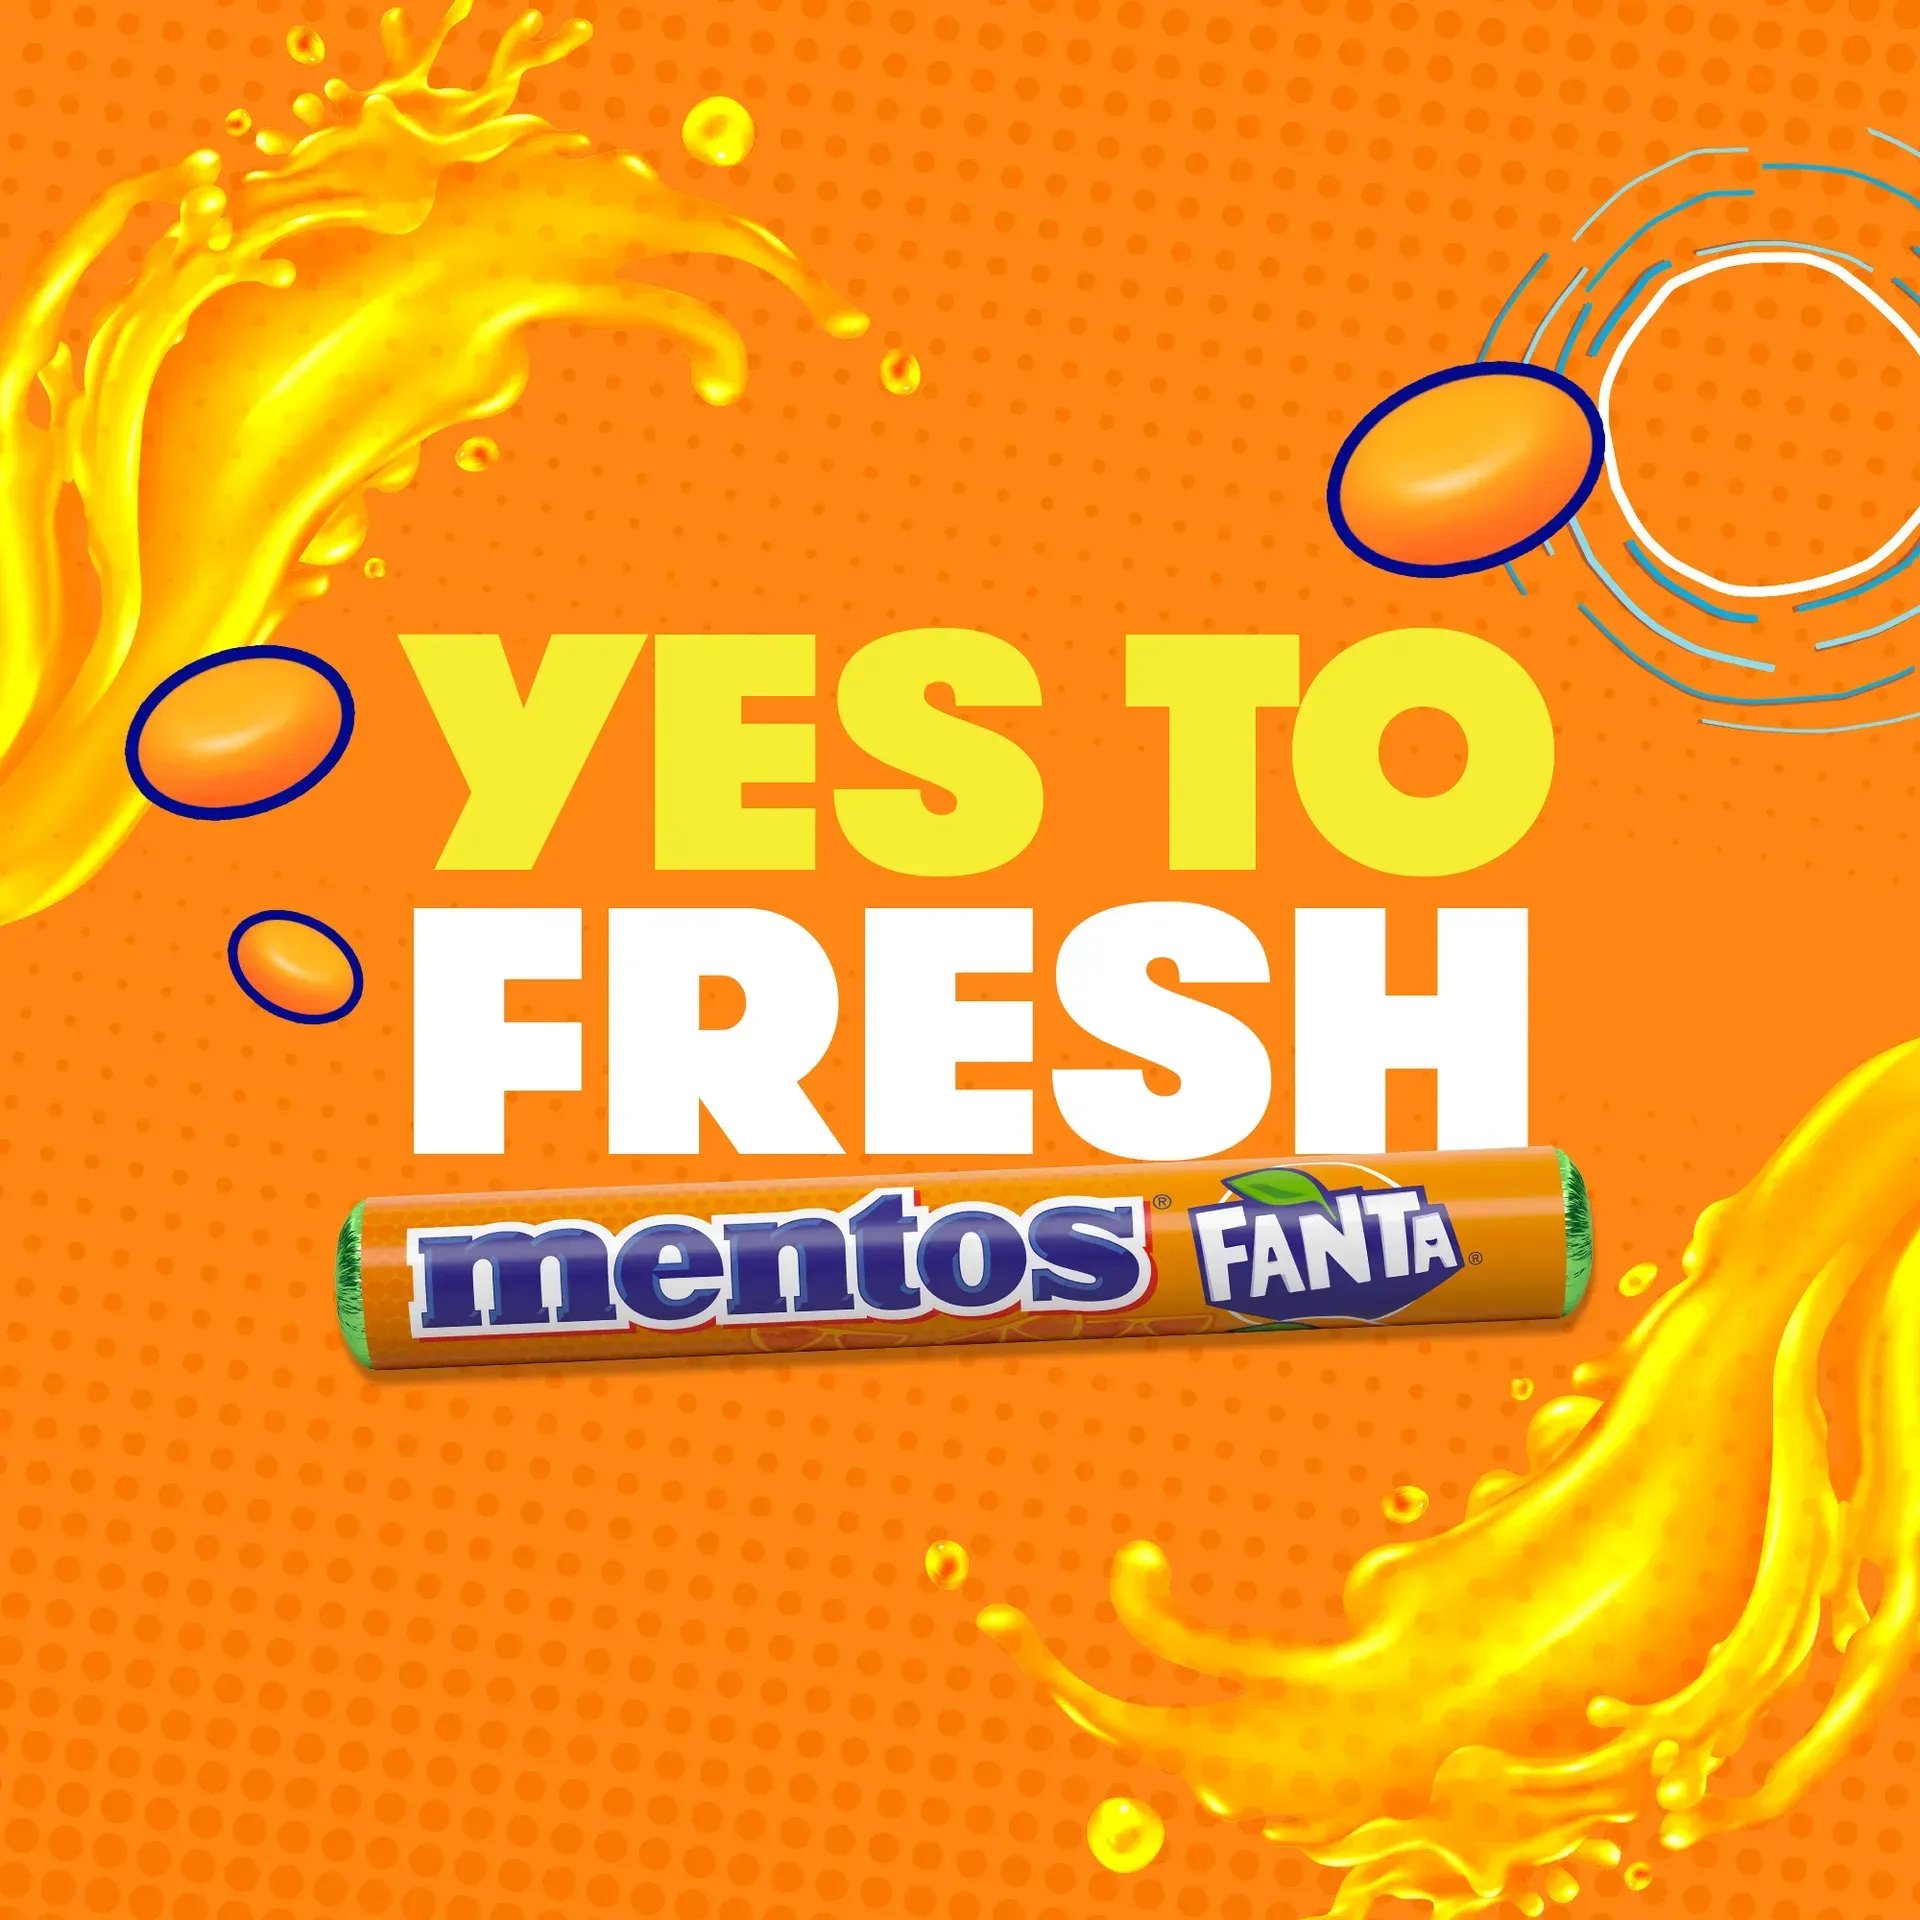 Njut av kombinationen Mentos och Fanta! Denna Limited Edition-rulle ger en fantastiskt fräsch smak! En av världens mest populära läskedrycker finns nu som ett utsökt Mentos-godis. Det här är drycken du kan tugga. Den begränsade upplagan är tillgänglig i ett år, så passa på att prova medan du kan! 